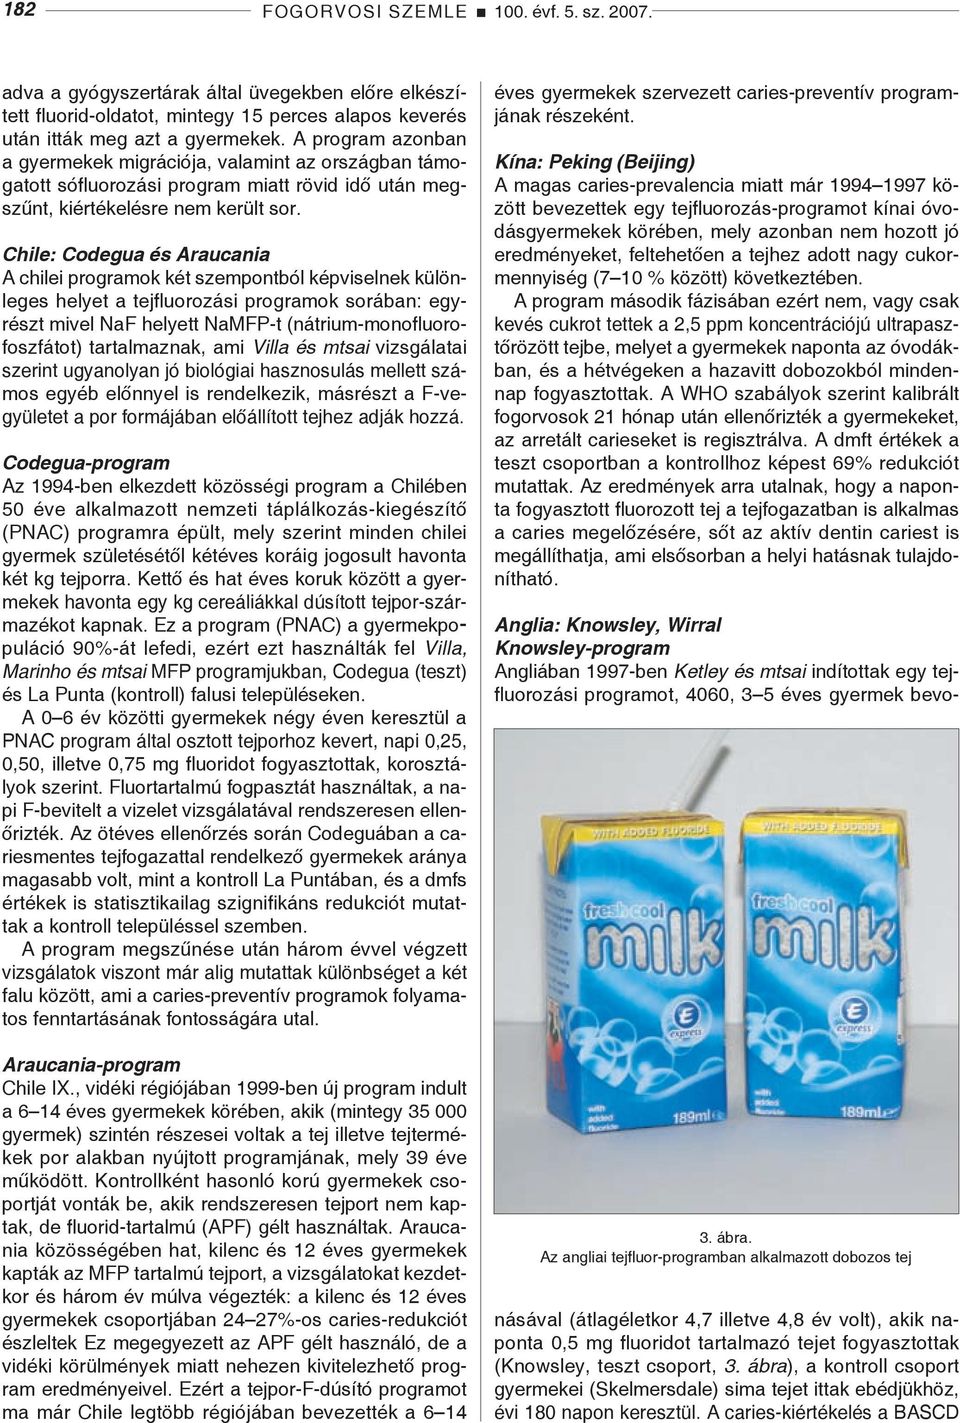 Chile: Codegua és Araucania A chilei programok két szempontból képviselnek különleges helyet a tejfluorozási programok sorában: egyrészt mivel NaF helyett NaMFP-t (nátrium-monofluorofoszfátot)